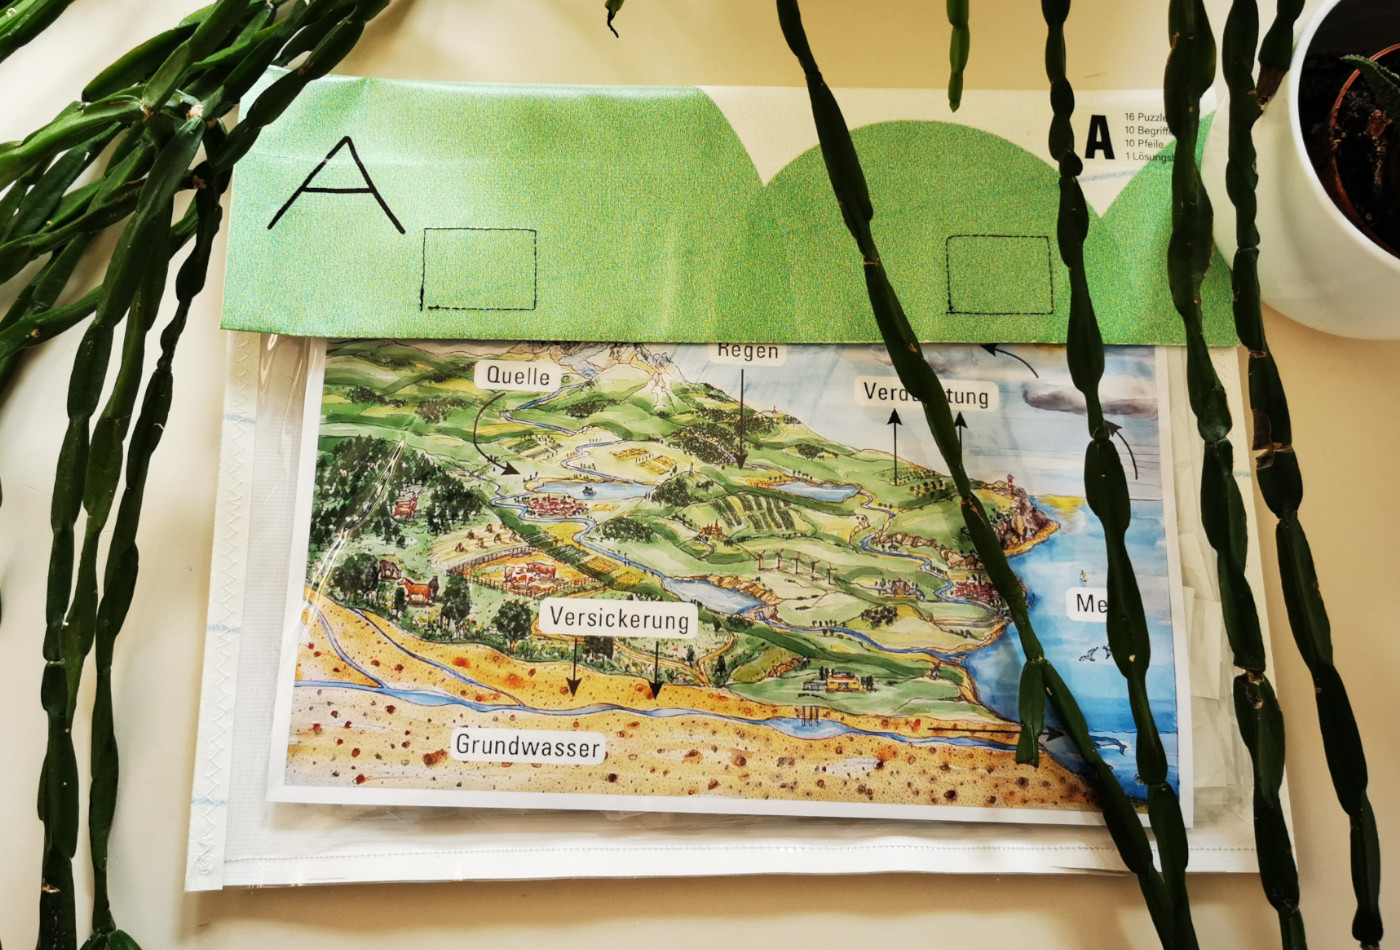 Eine transparente Mappe mit einer beschrifteten, bunten Landschaftskarte darin.